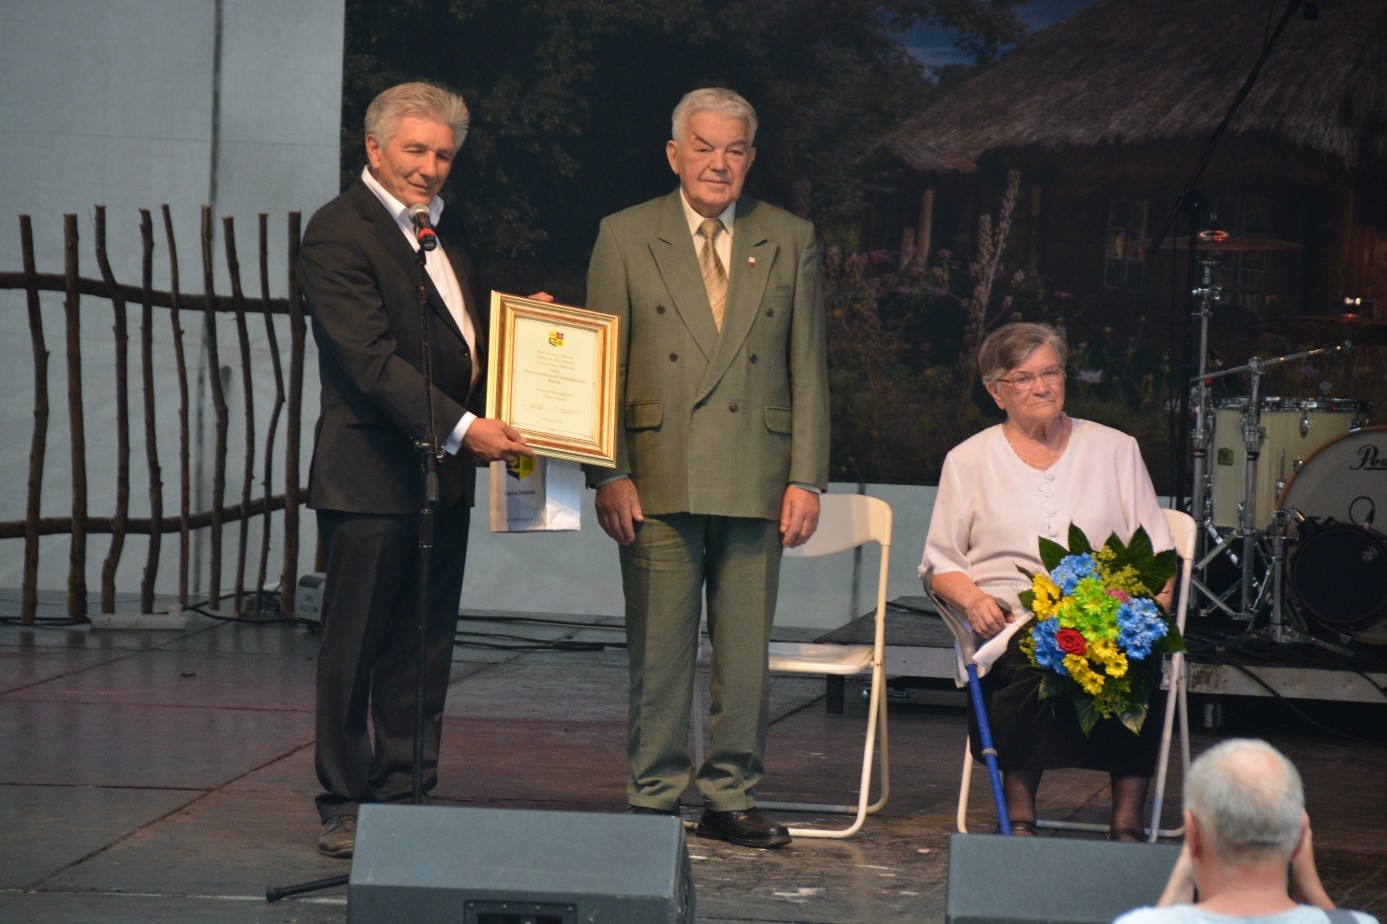 Przewodniczący Rady Gminy Janusz Szerffel wręcza pamiątkowy dyplom Czesławowi Kabzie